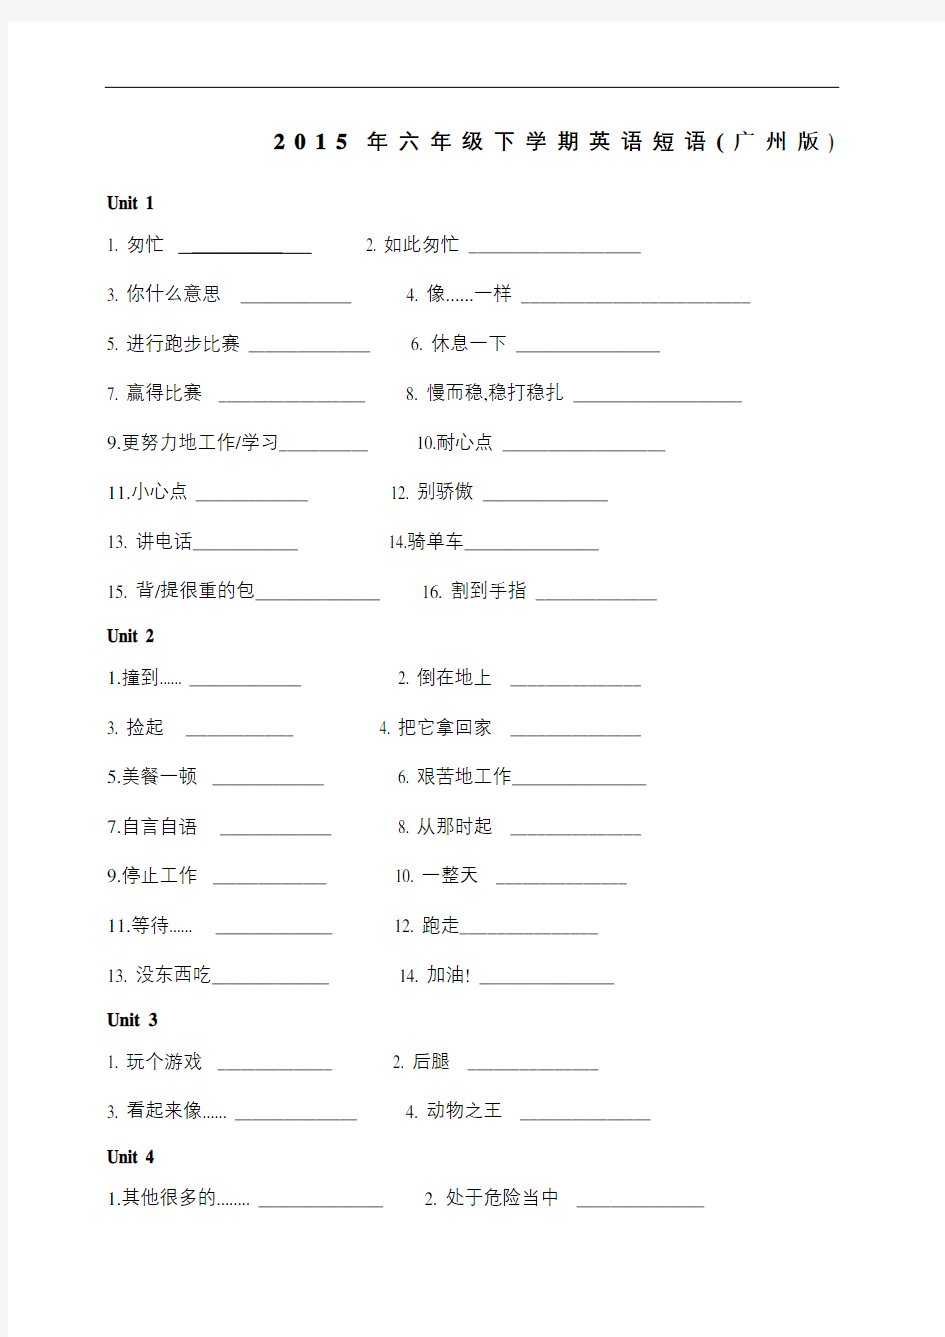 广州新版六年级下册各单元短语汇总默写